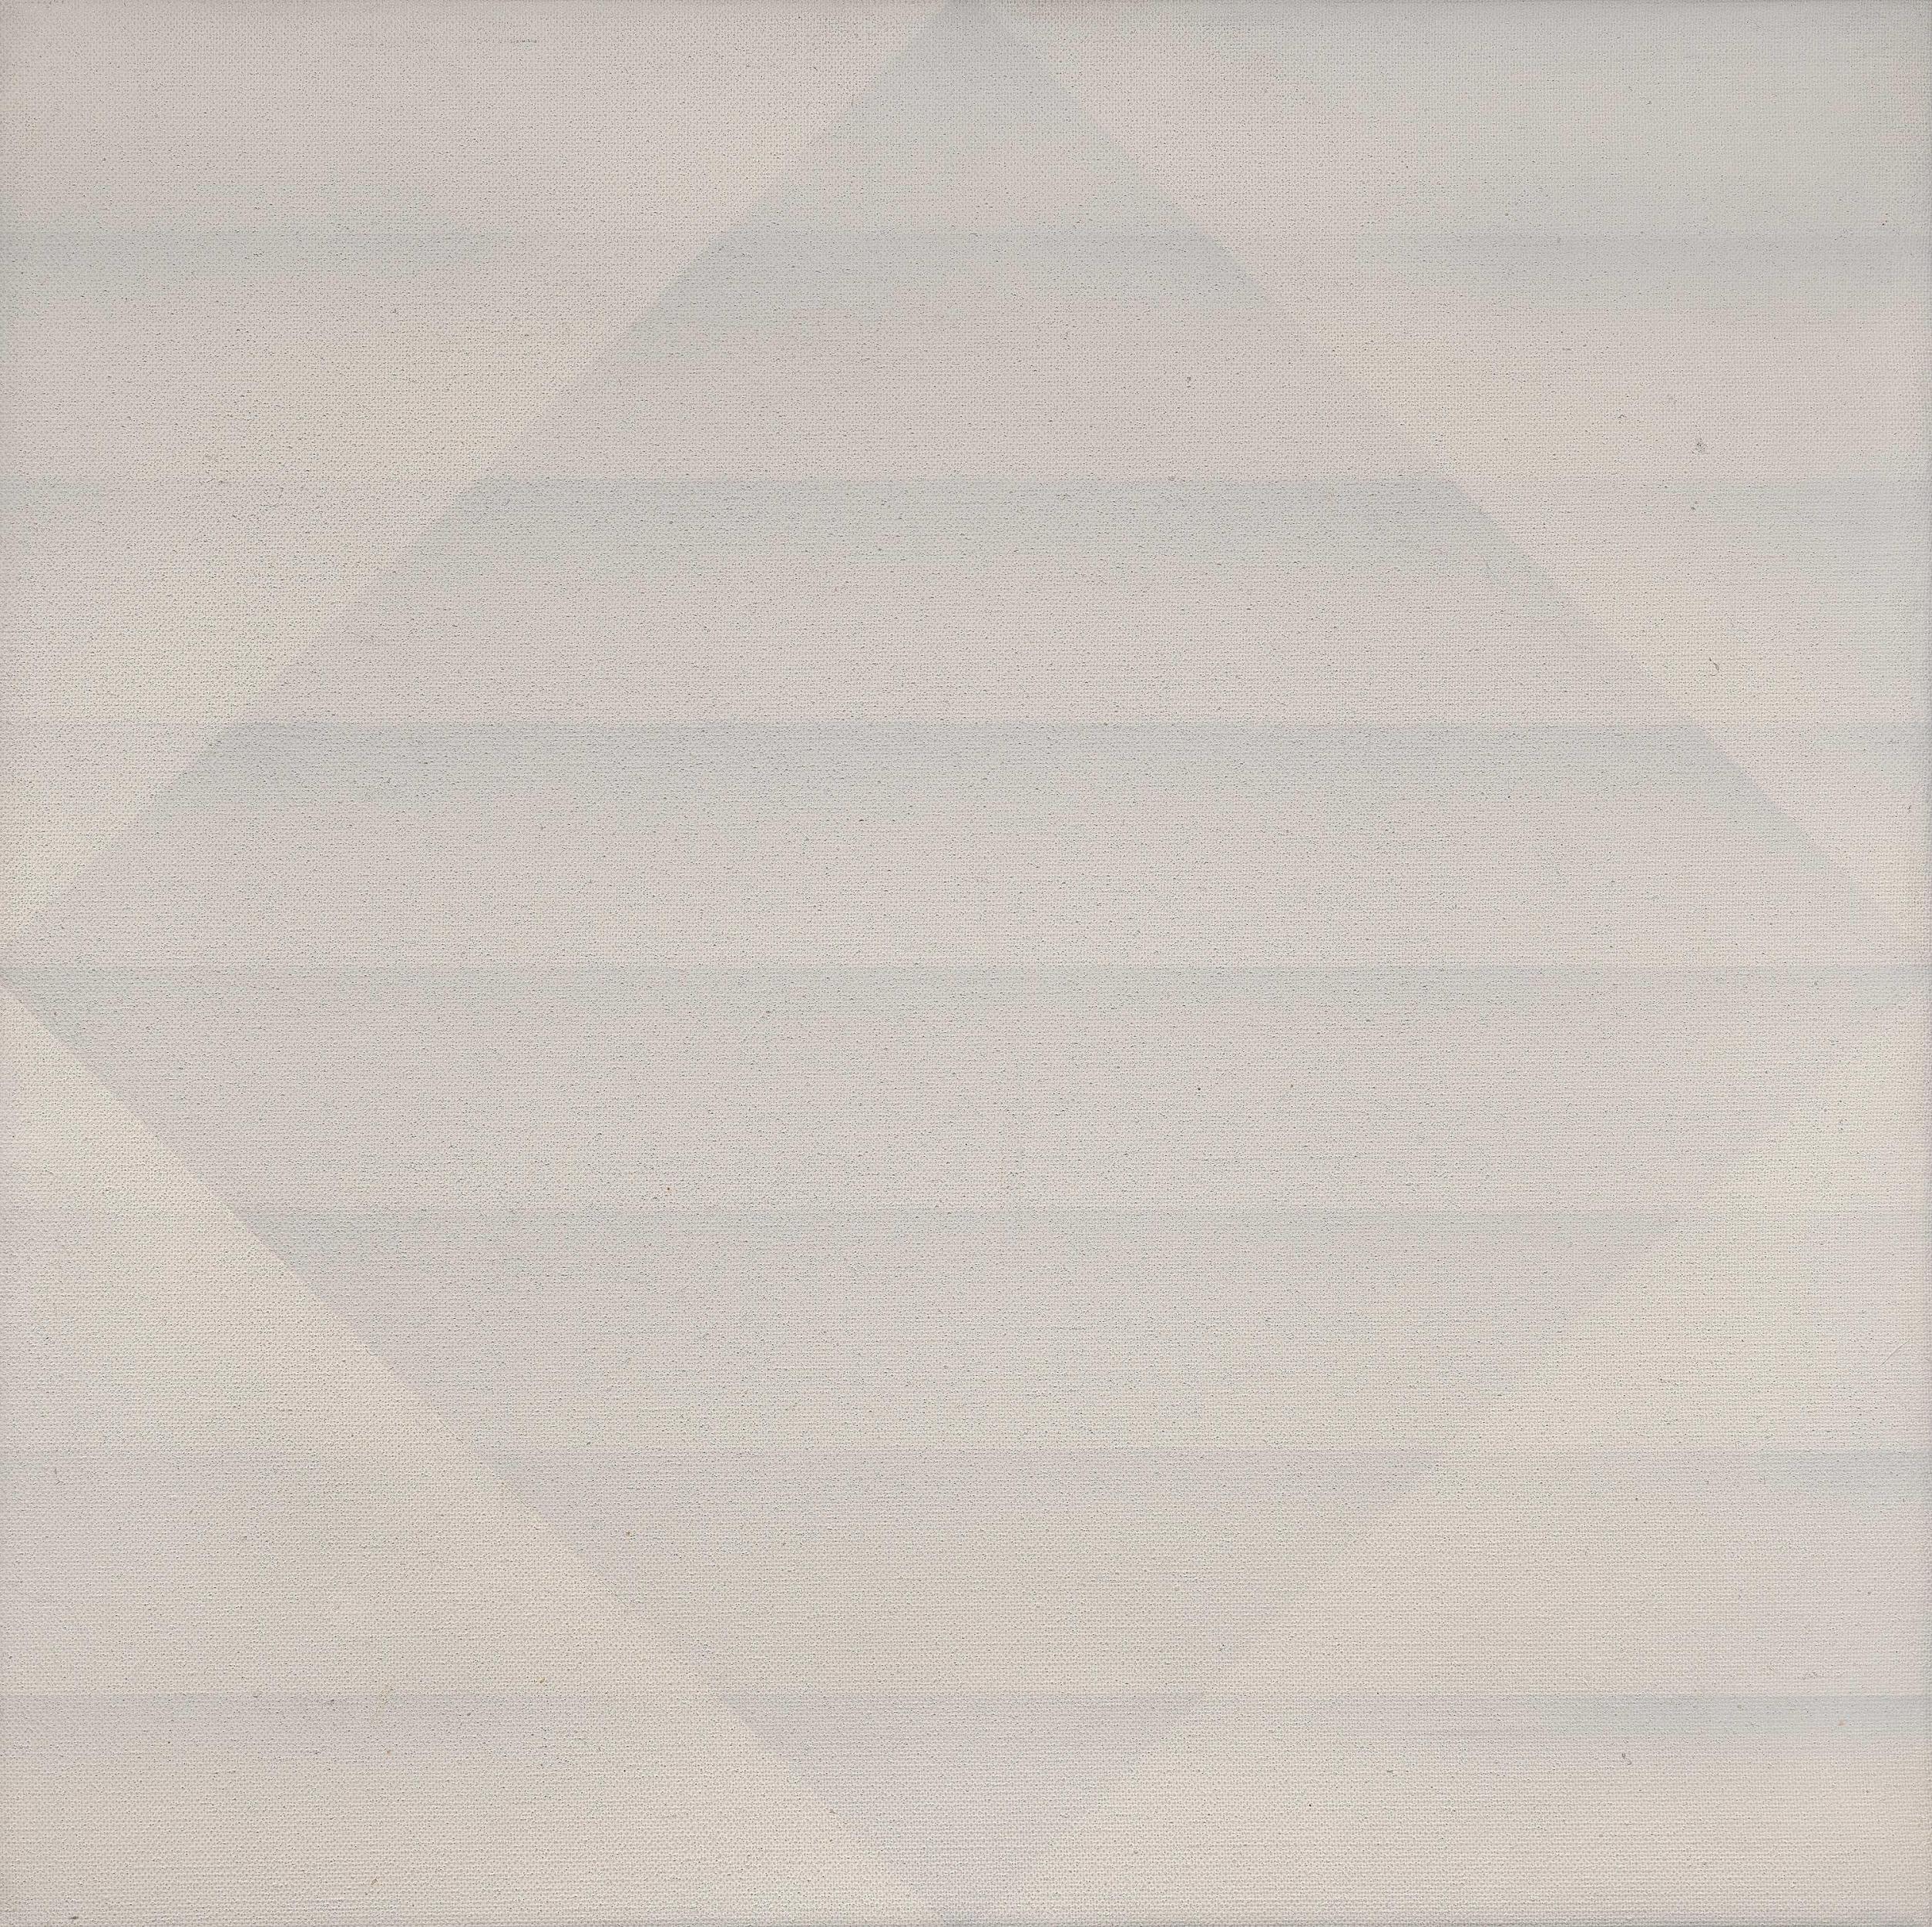 Raimund Girke - Kleines Weiss-Quadrat, 70282-3, Van Ham Kunstauktionen